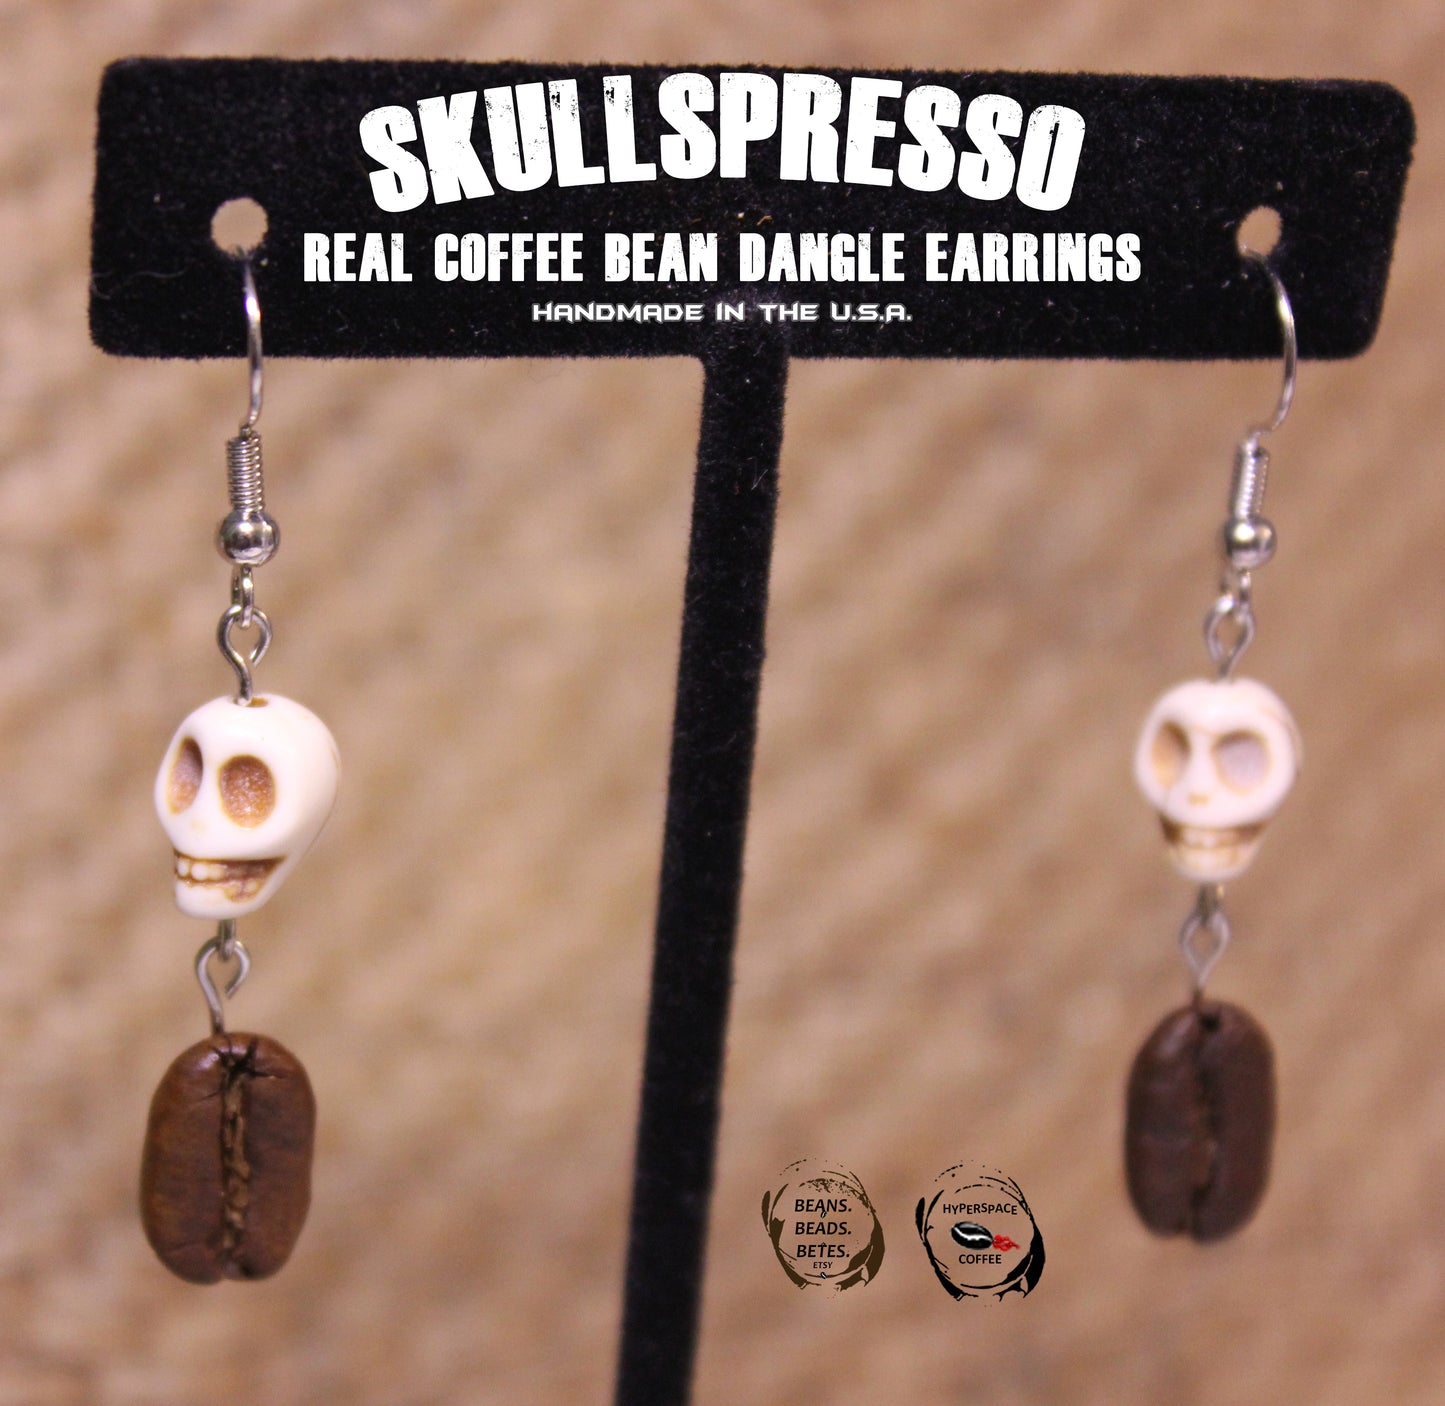 SKULLSPRESSO Real Coffee Bean Dangle Earrings